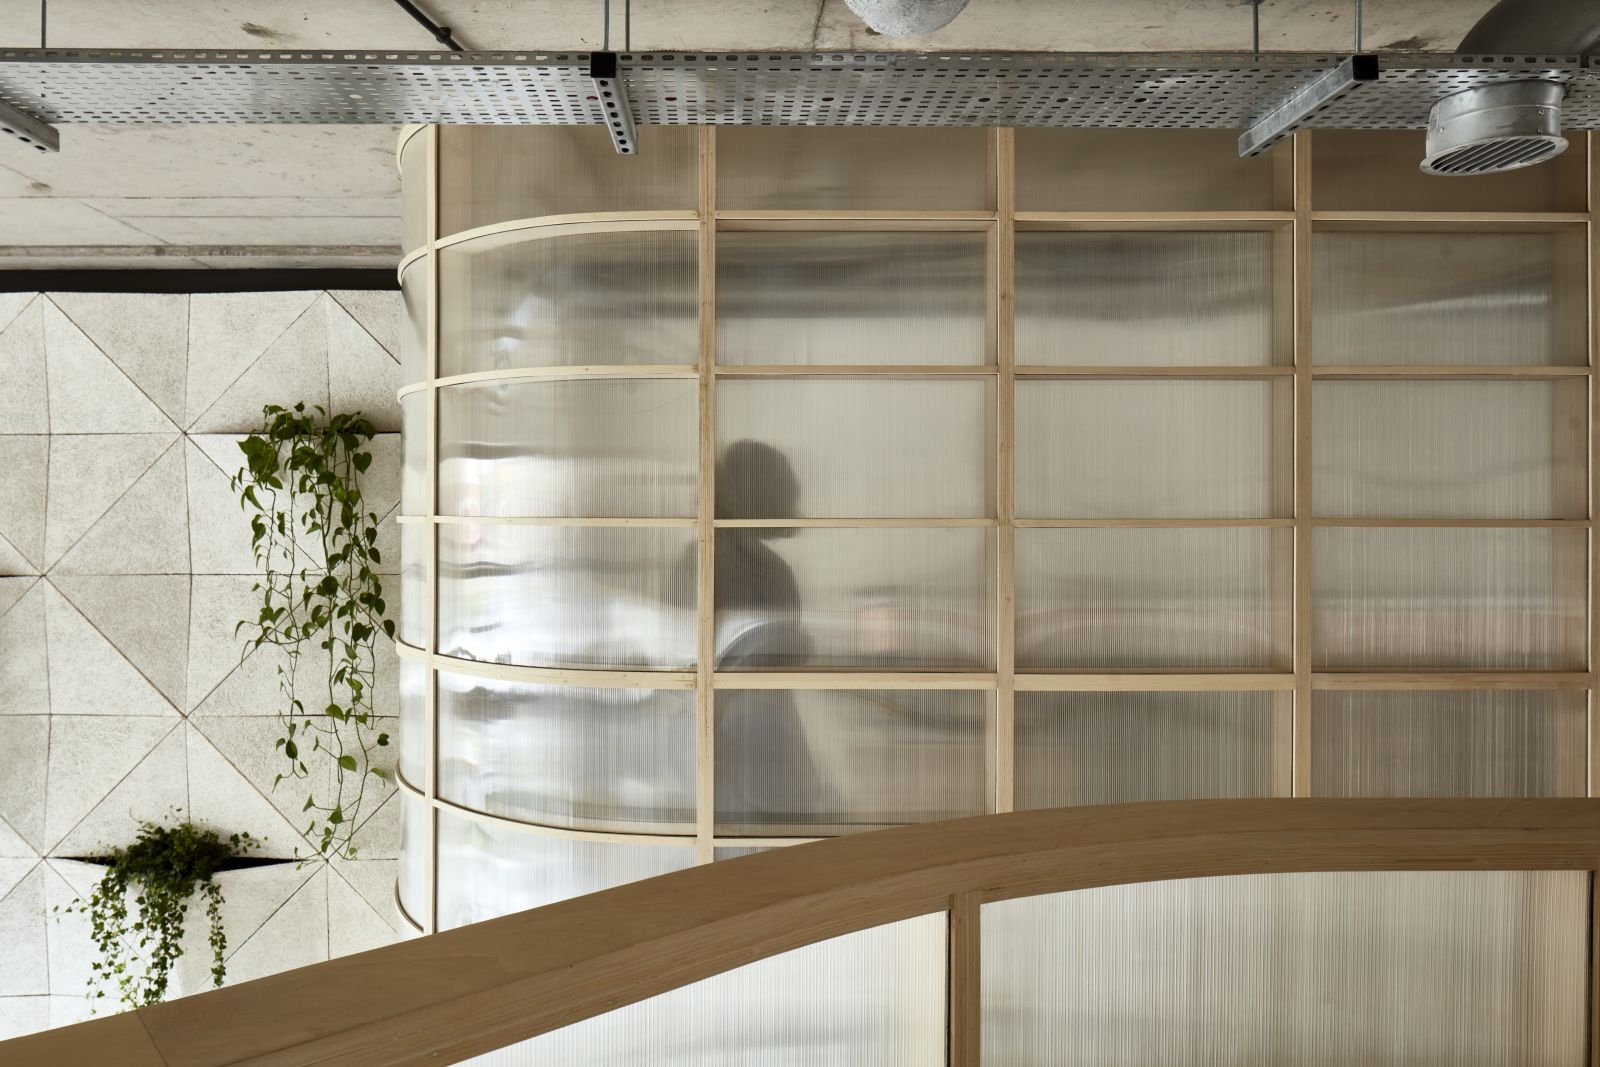 图片[7]|场景架构办公室——伦敦|ART-Arrakis | 建筑室内设计的创新与灵感